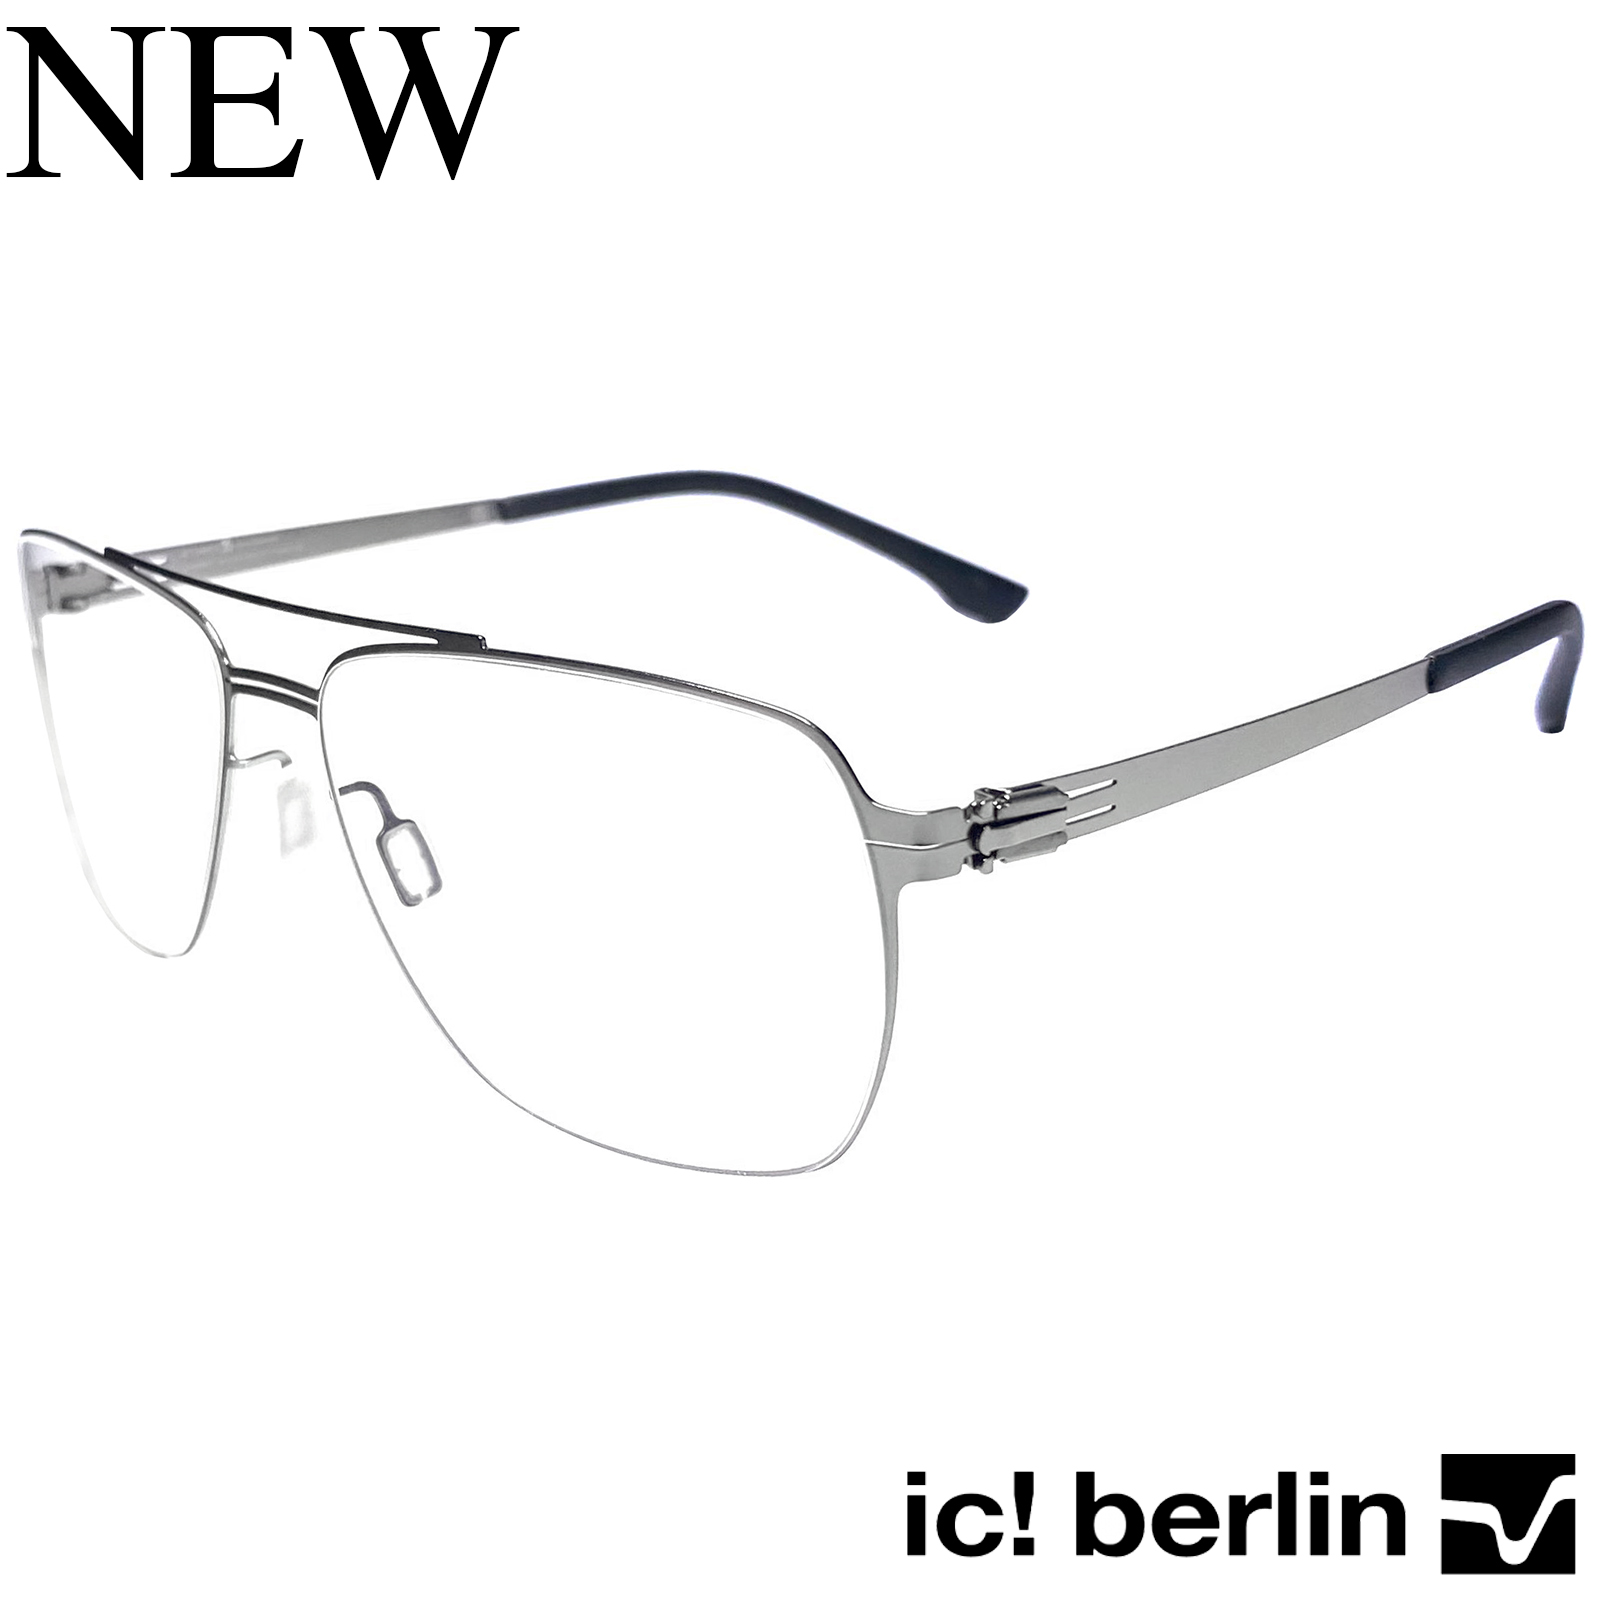 กรอบแว่นตา สำหรับตัดเลนส์ แว่นตาชาย หญิง Fashion รุ่น IC-Fran M 55 สีเงิน กรอบเต็ม ทรงรี ขาไม่ใช้น็อต ถอดได้ วัสดุ Stainless Steel น้ำหนักเบา